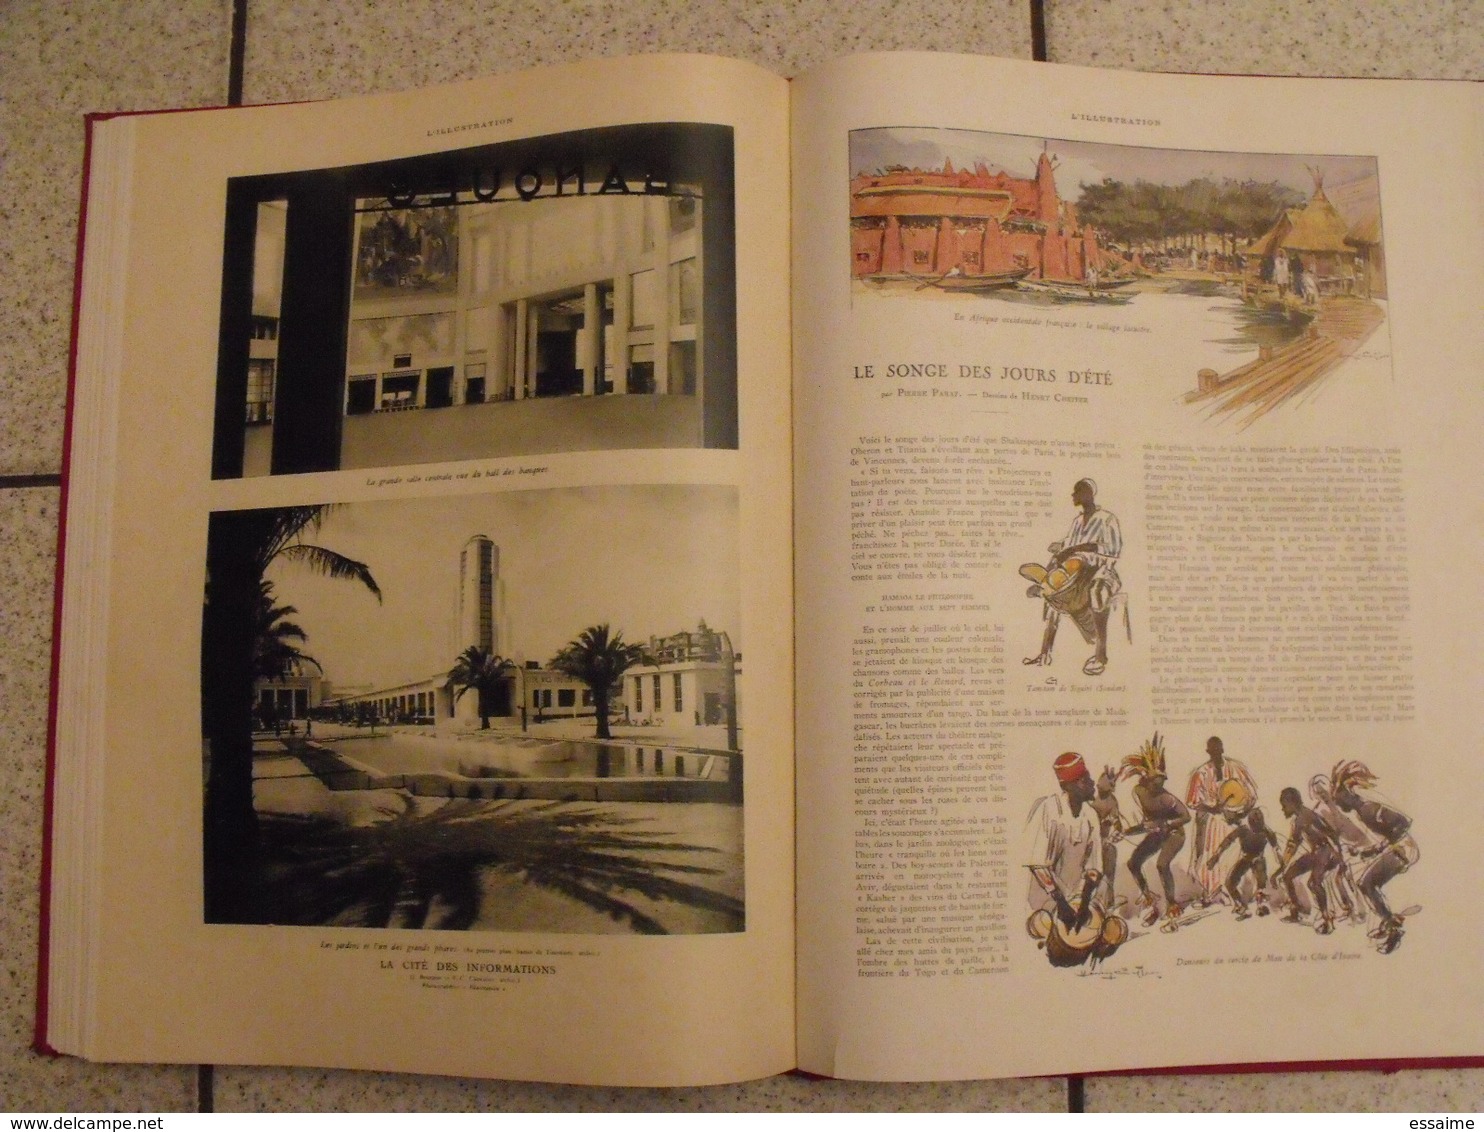 album de l'exposition coloniale de Paris - 1931. l'illustration. nombreuses photos + dessins aquarelle. belle reliure